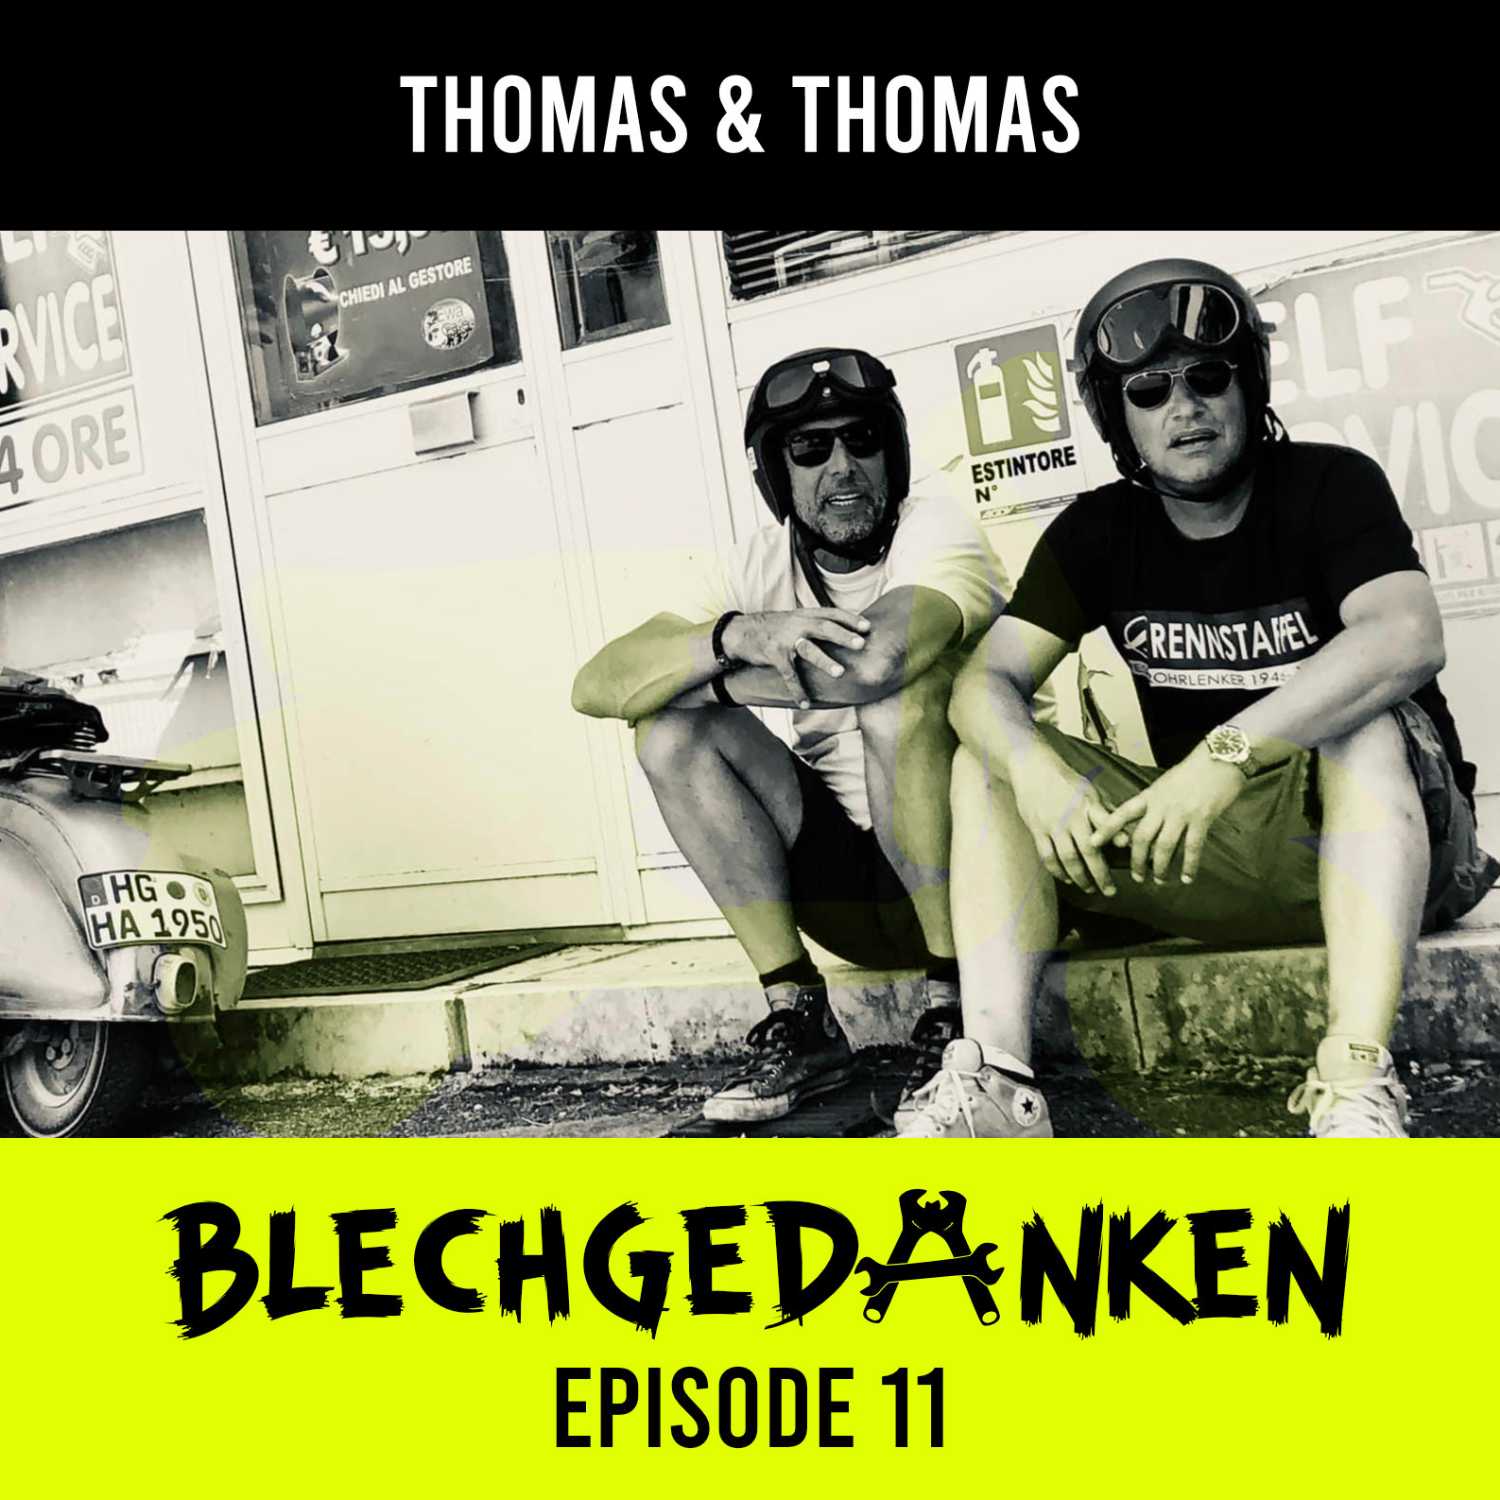 Blechgedanken Episode 11 -Thomas & Thomas – Altes Blech, die Rennstaffel und zweimal eine echt runde Sache..